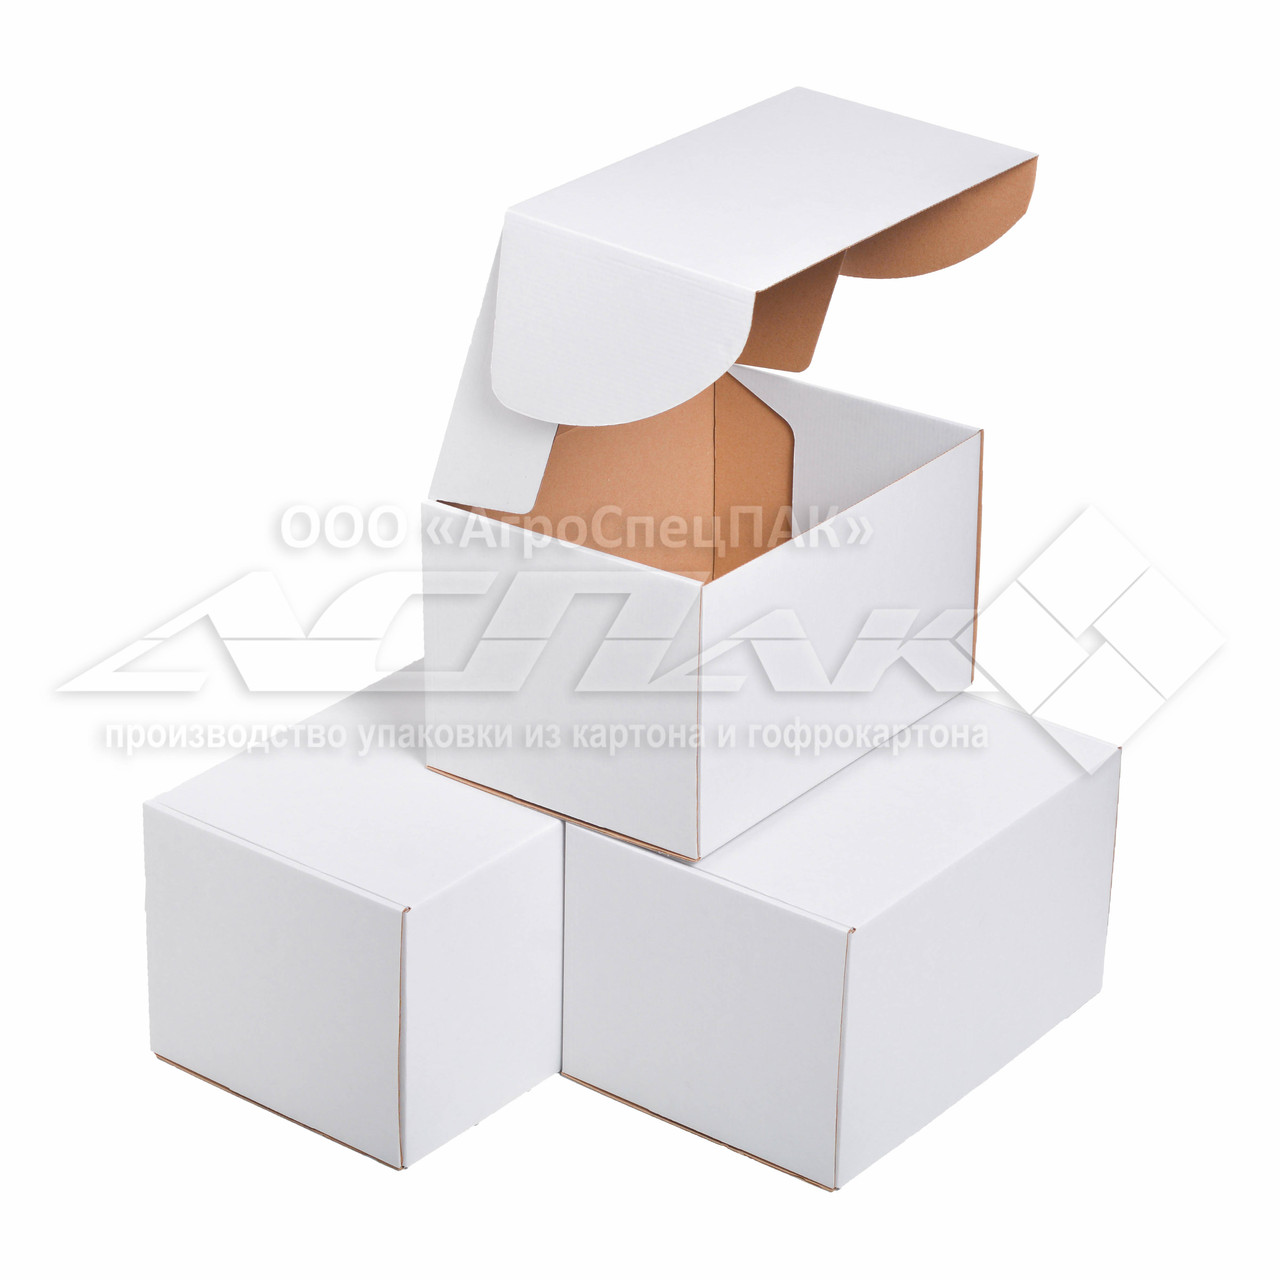 Картонна коробка 310х220х190 біла. Коробка формату А4.